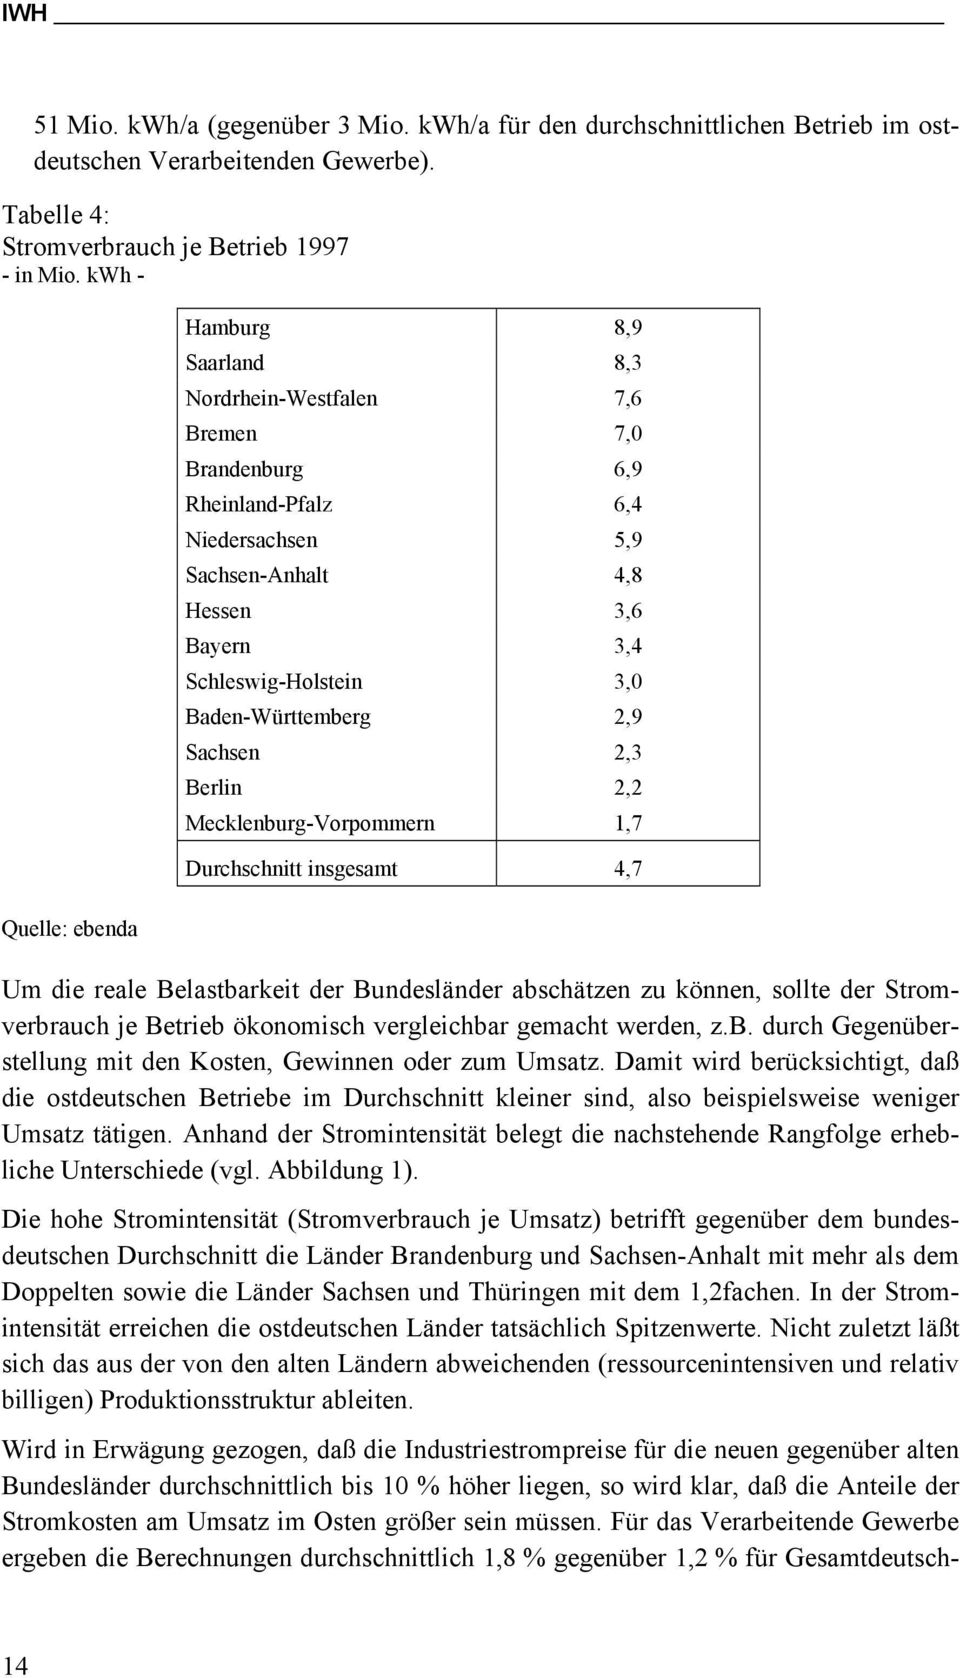 Baden-Württemberg 2,9 Sachsen 2,3 Berlin 2,2 Mecklenburg-Vorpommern 1,7 Durchschnitt insgesamt 4,7 Um die reale Belastbarkeit der Bundesländer abschätzen zu können, sollte der Stromverbrauch je